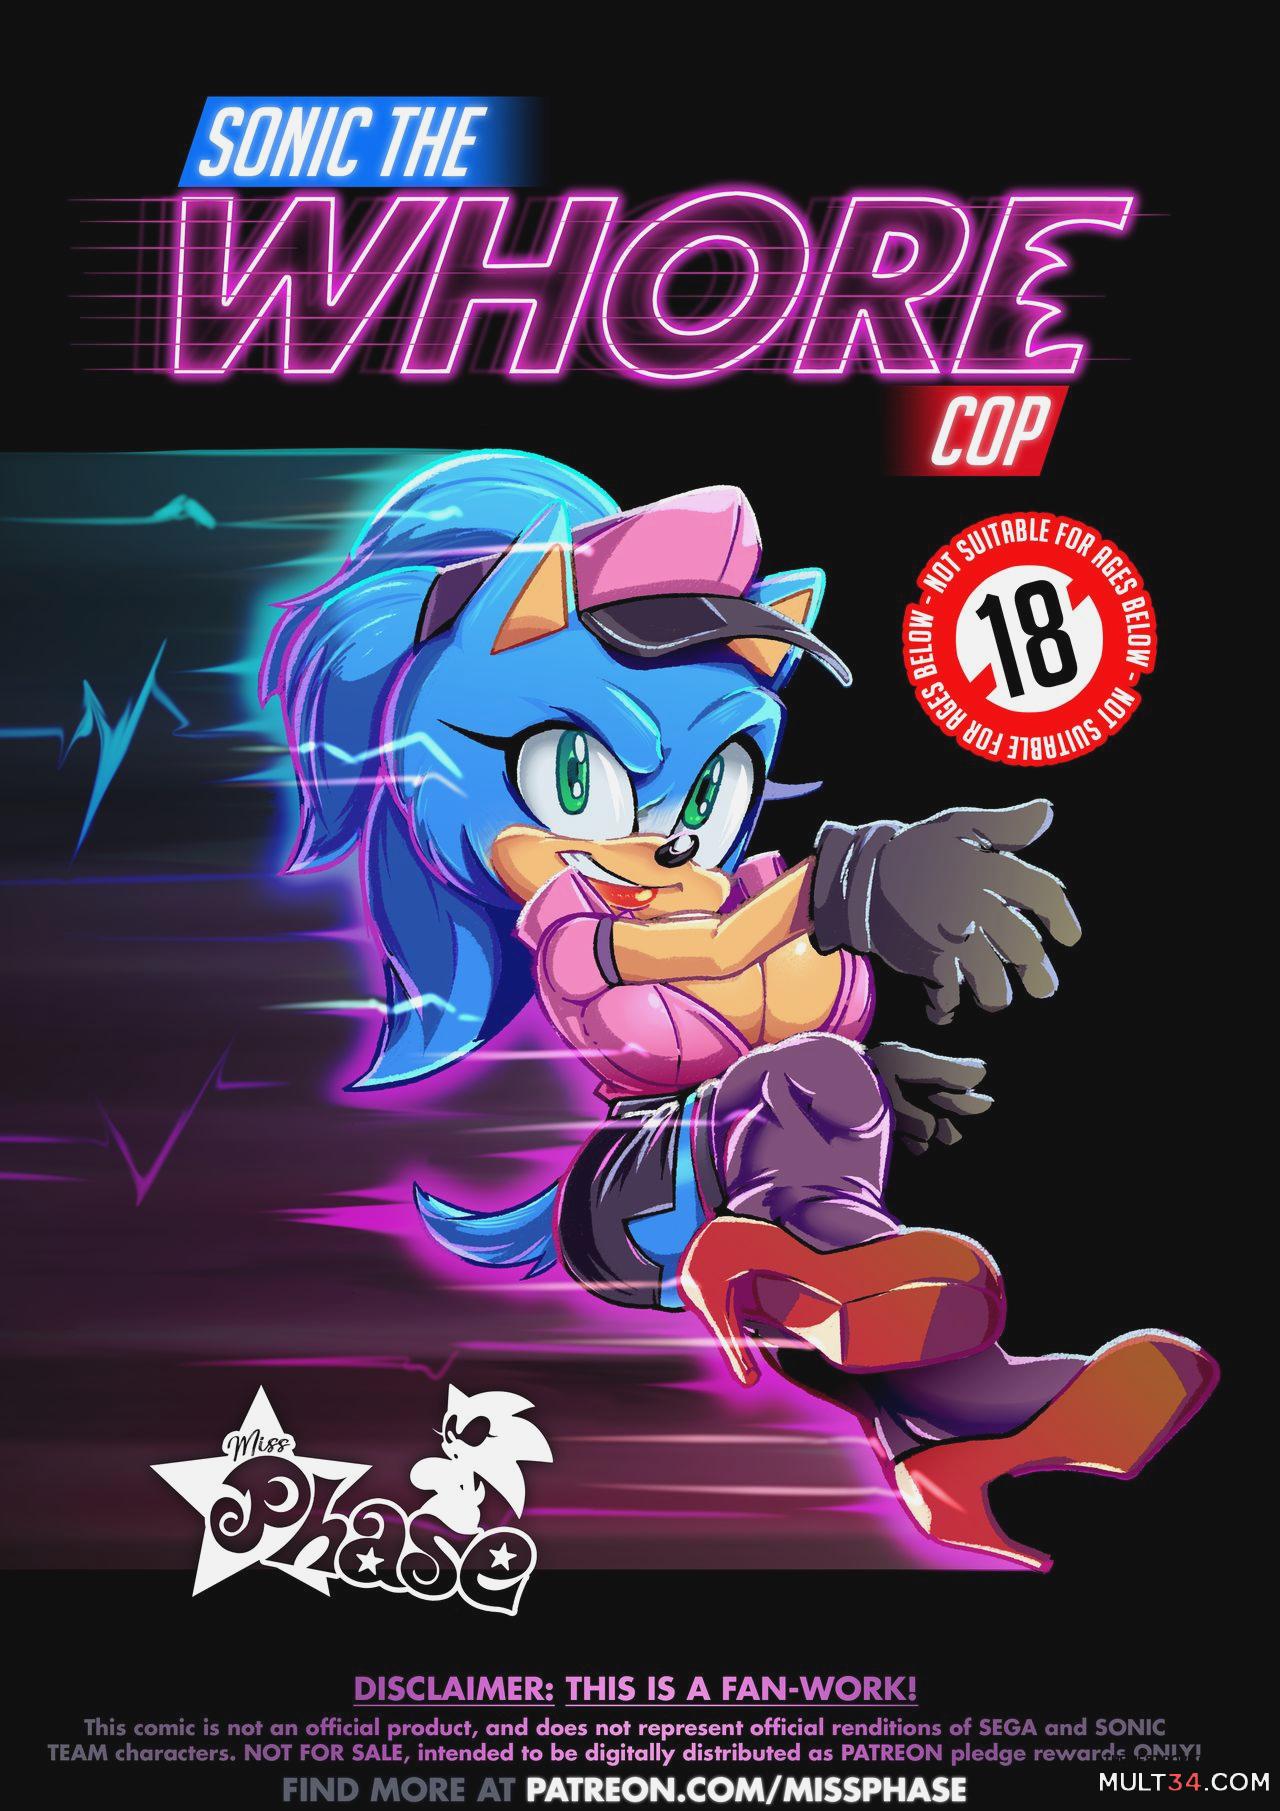 1280px x 1811px - Sonic The Whore Cop porn comic - the best cartoon porn comics, Rule 34 |  MULT34